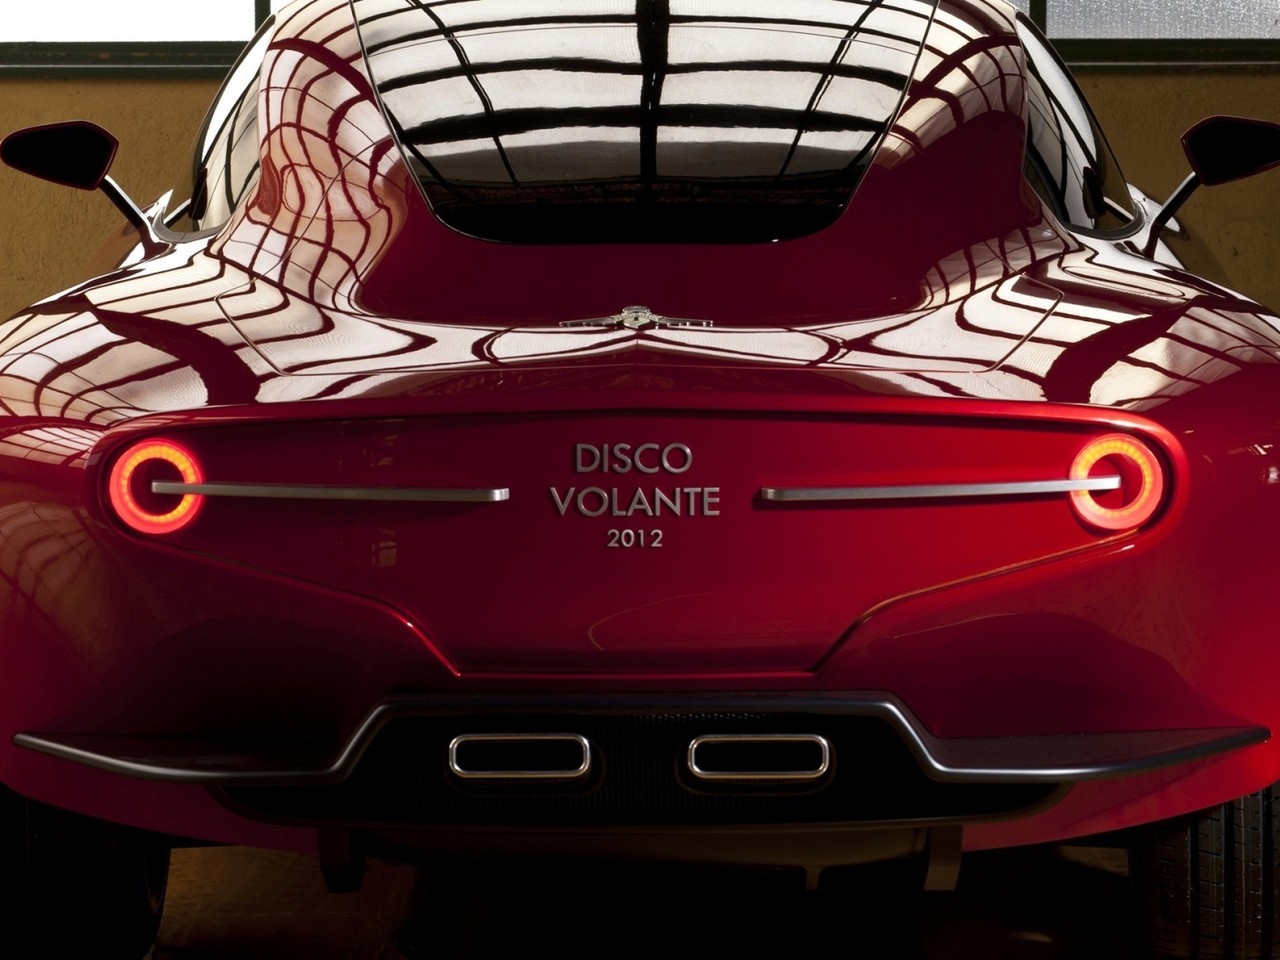 Alfa Romeo Disco Volante 2012 for 1280 x 960 resolution